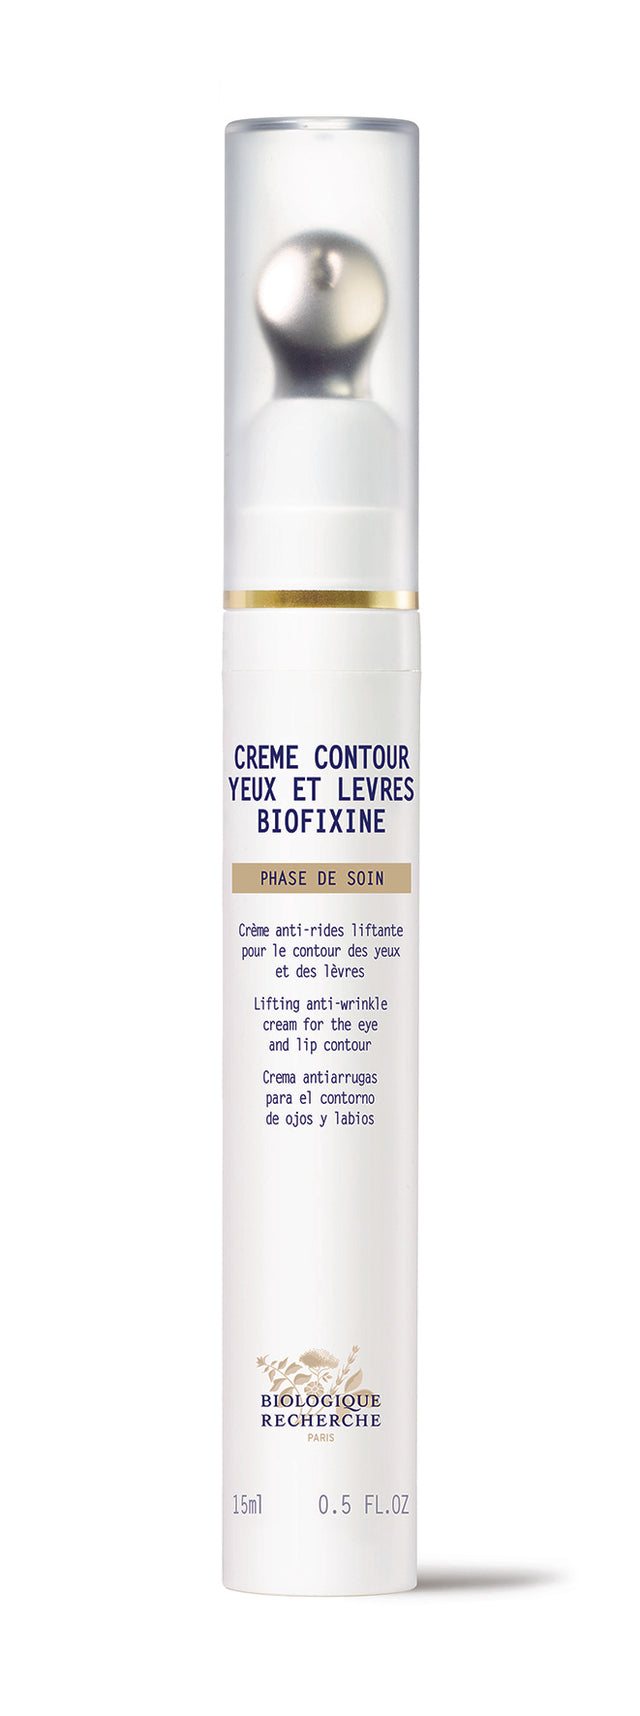 Product Image of Crème contour des yeux et lèvres Biofixine #2